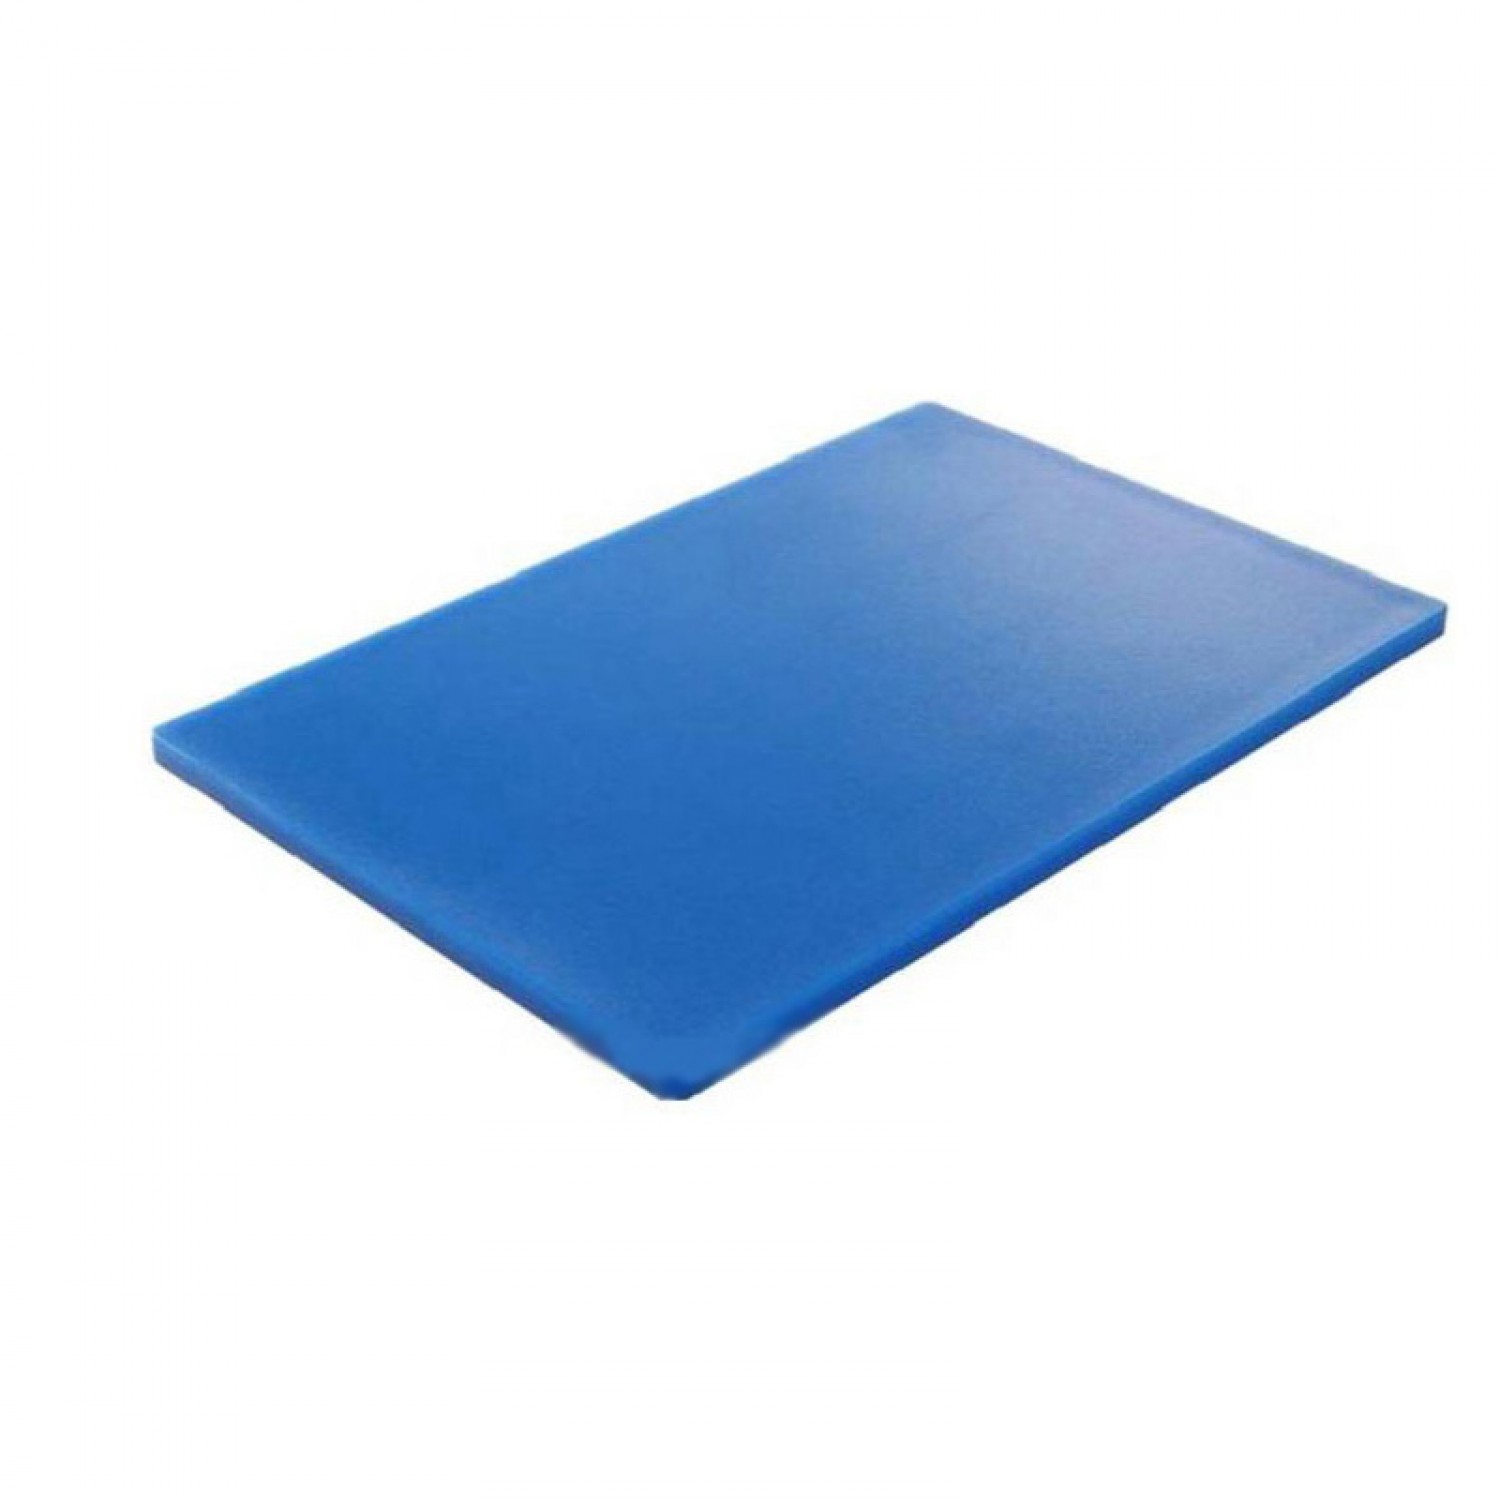 Πλάκα κοπής Μπλε πολυαιθυλενίου, διάστασης 50x30x1,3cm